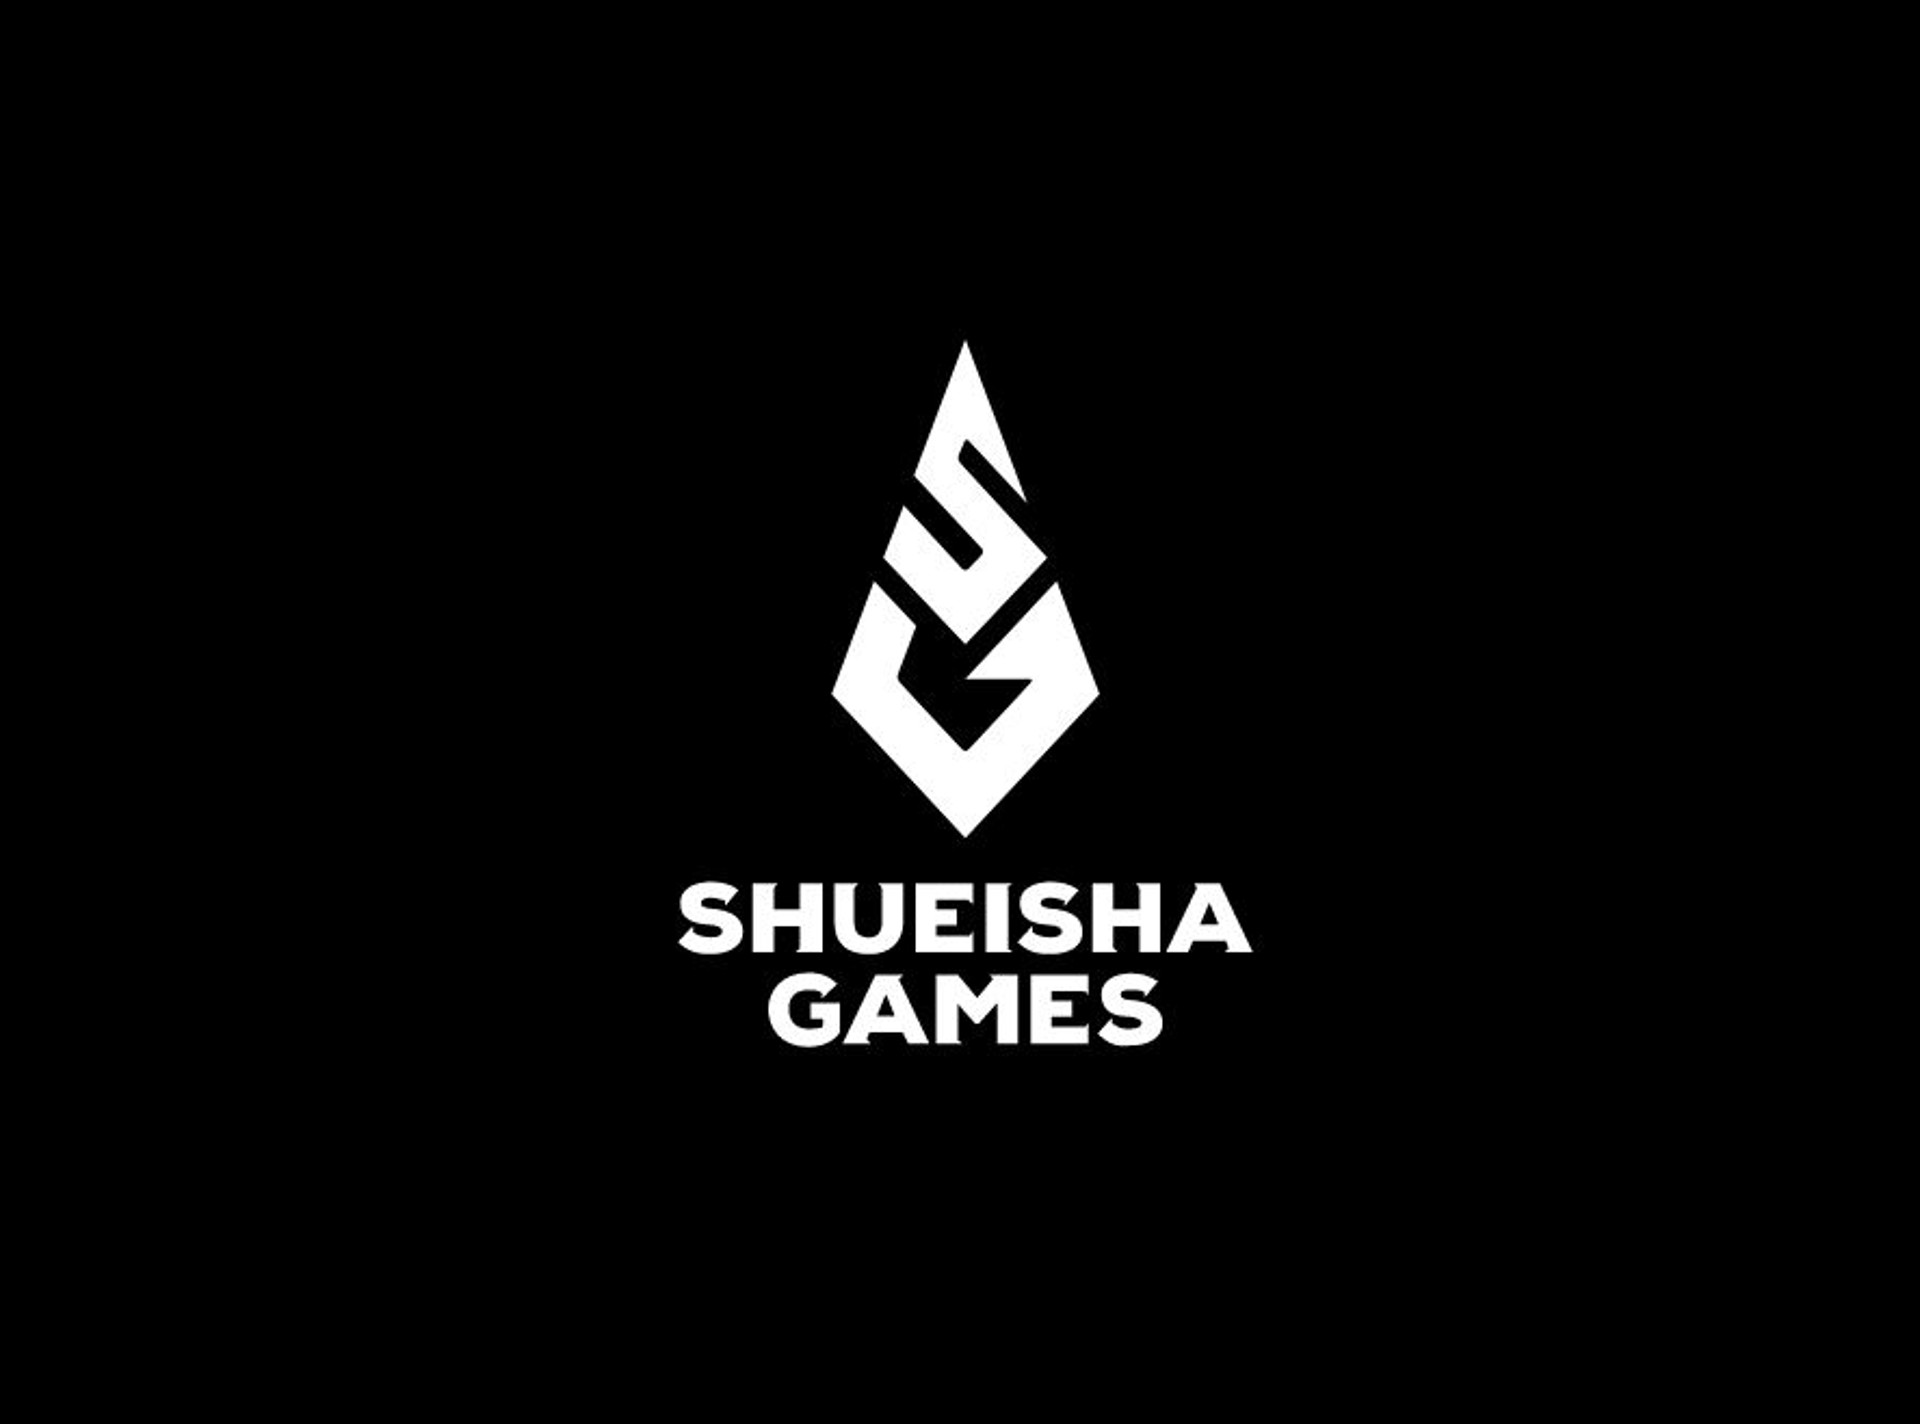 Shueisha Games